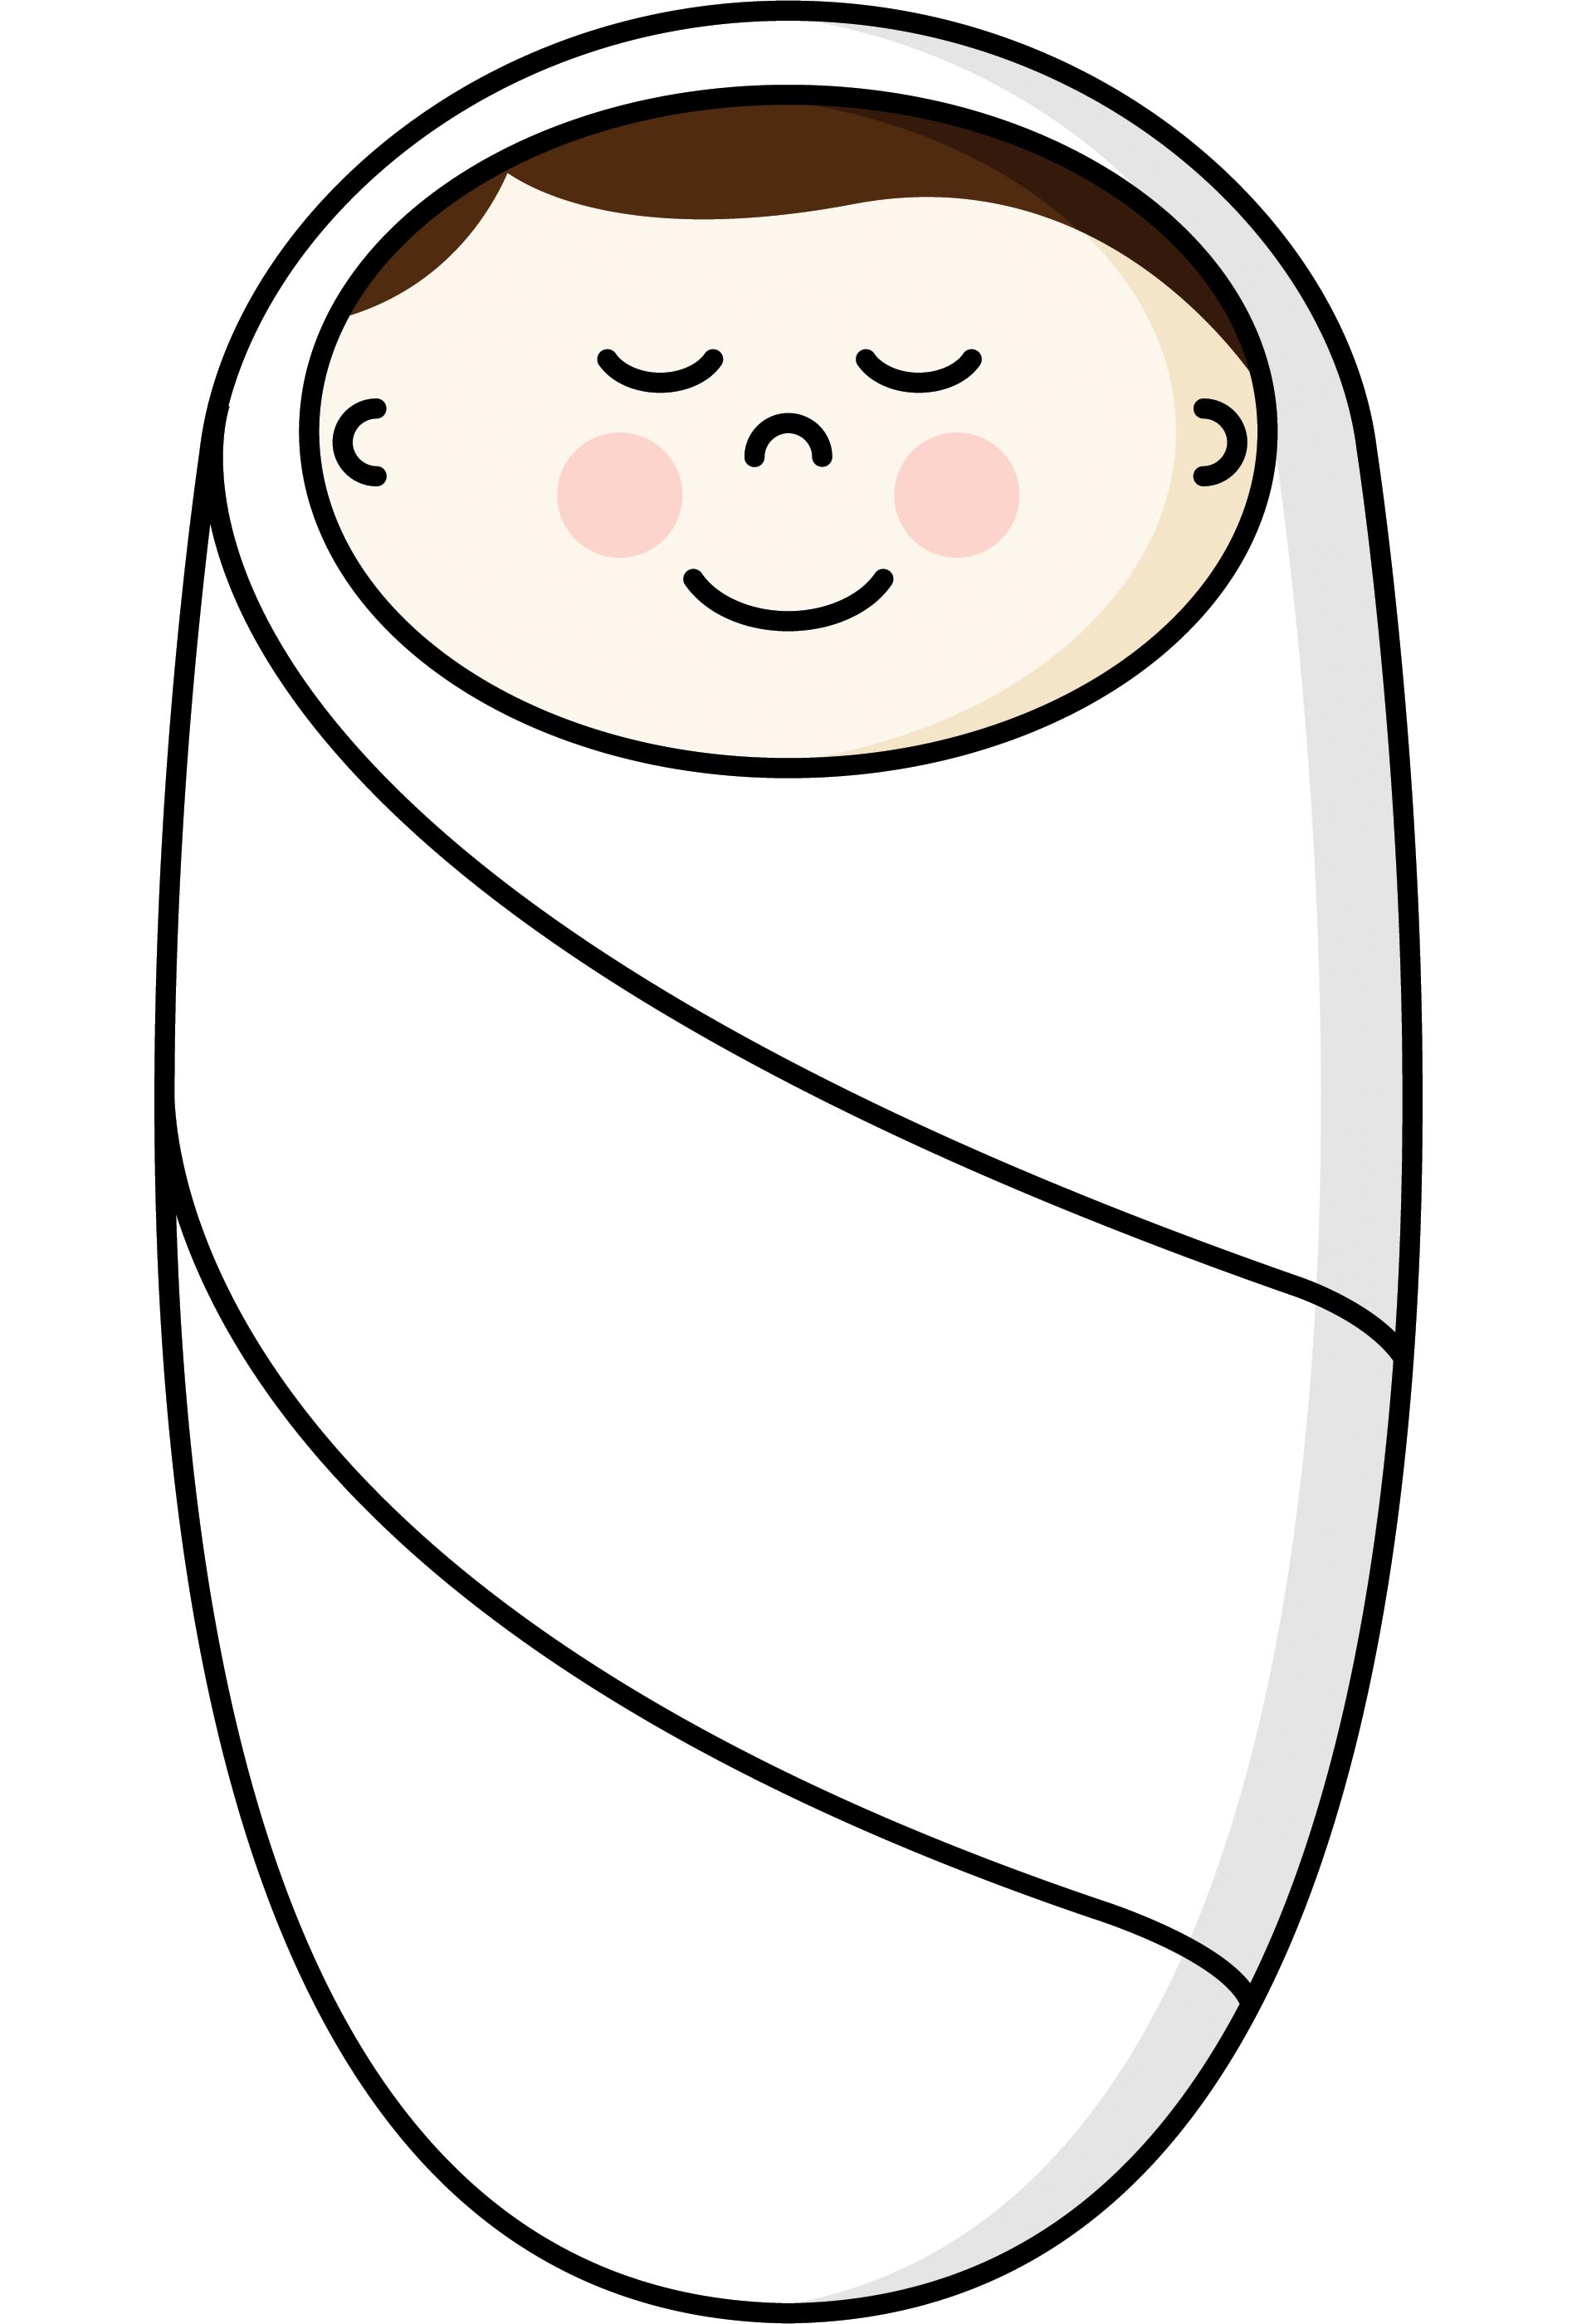 newborn baby animated clip art - photo #50